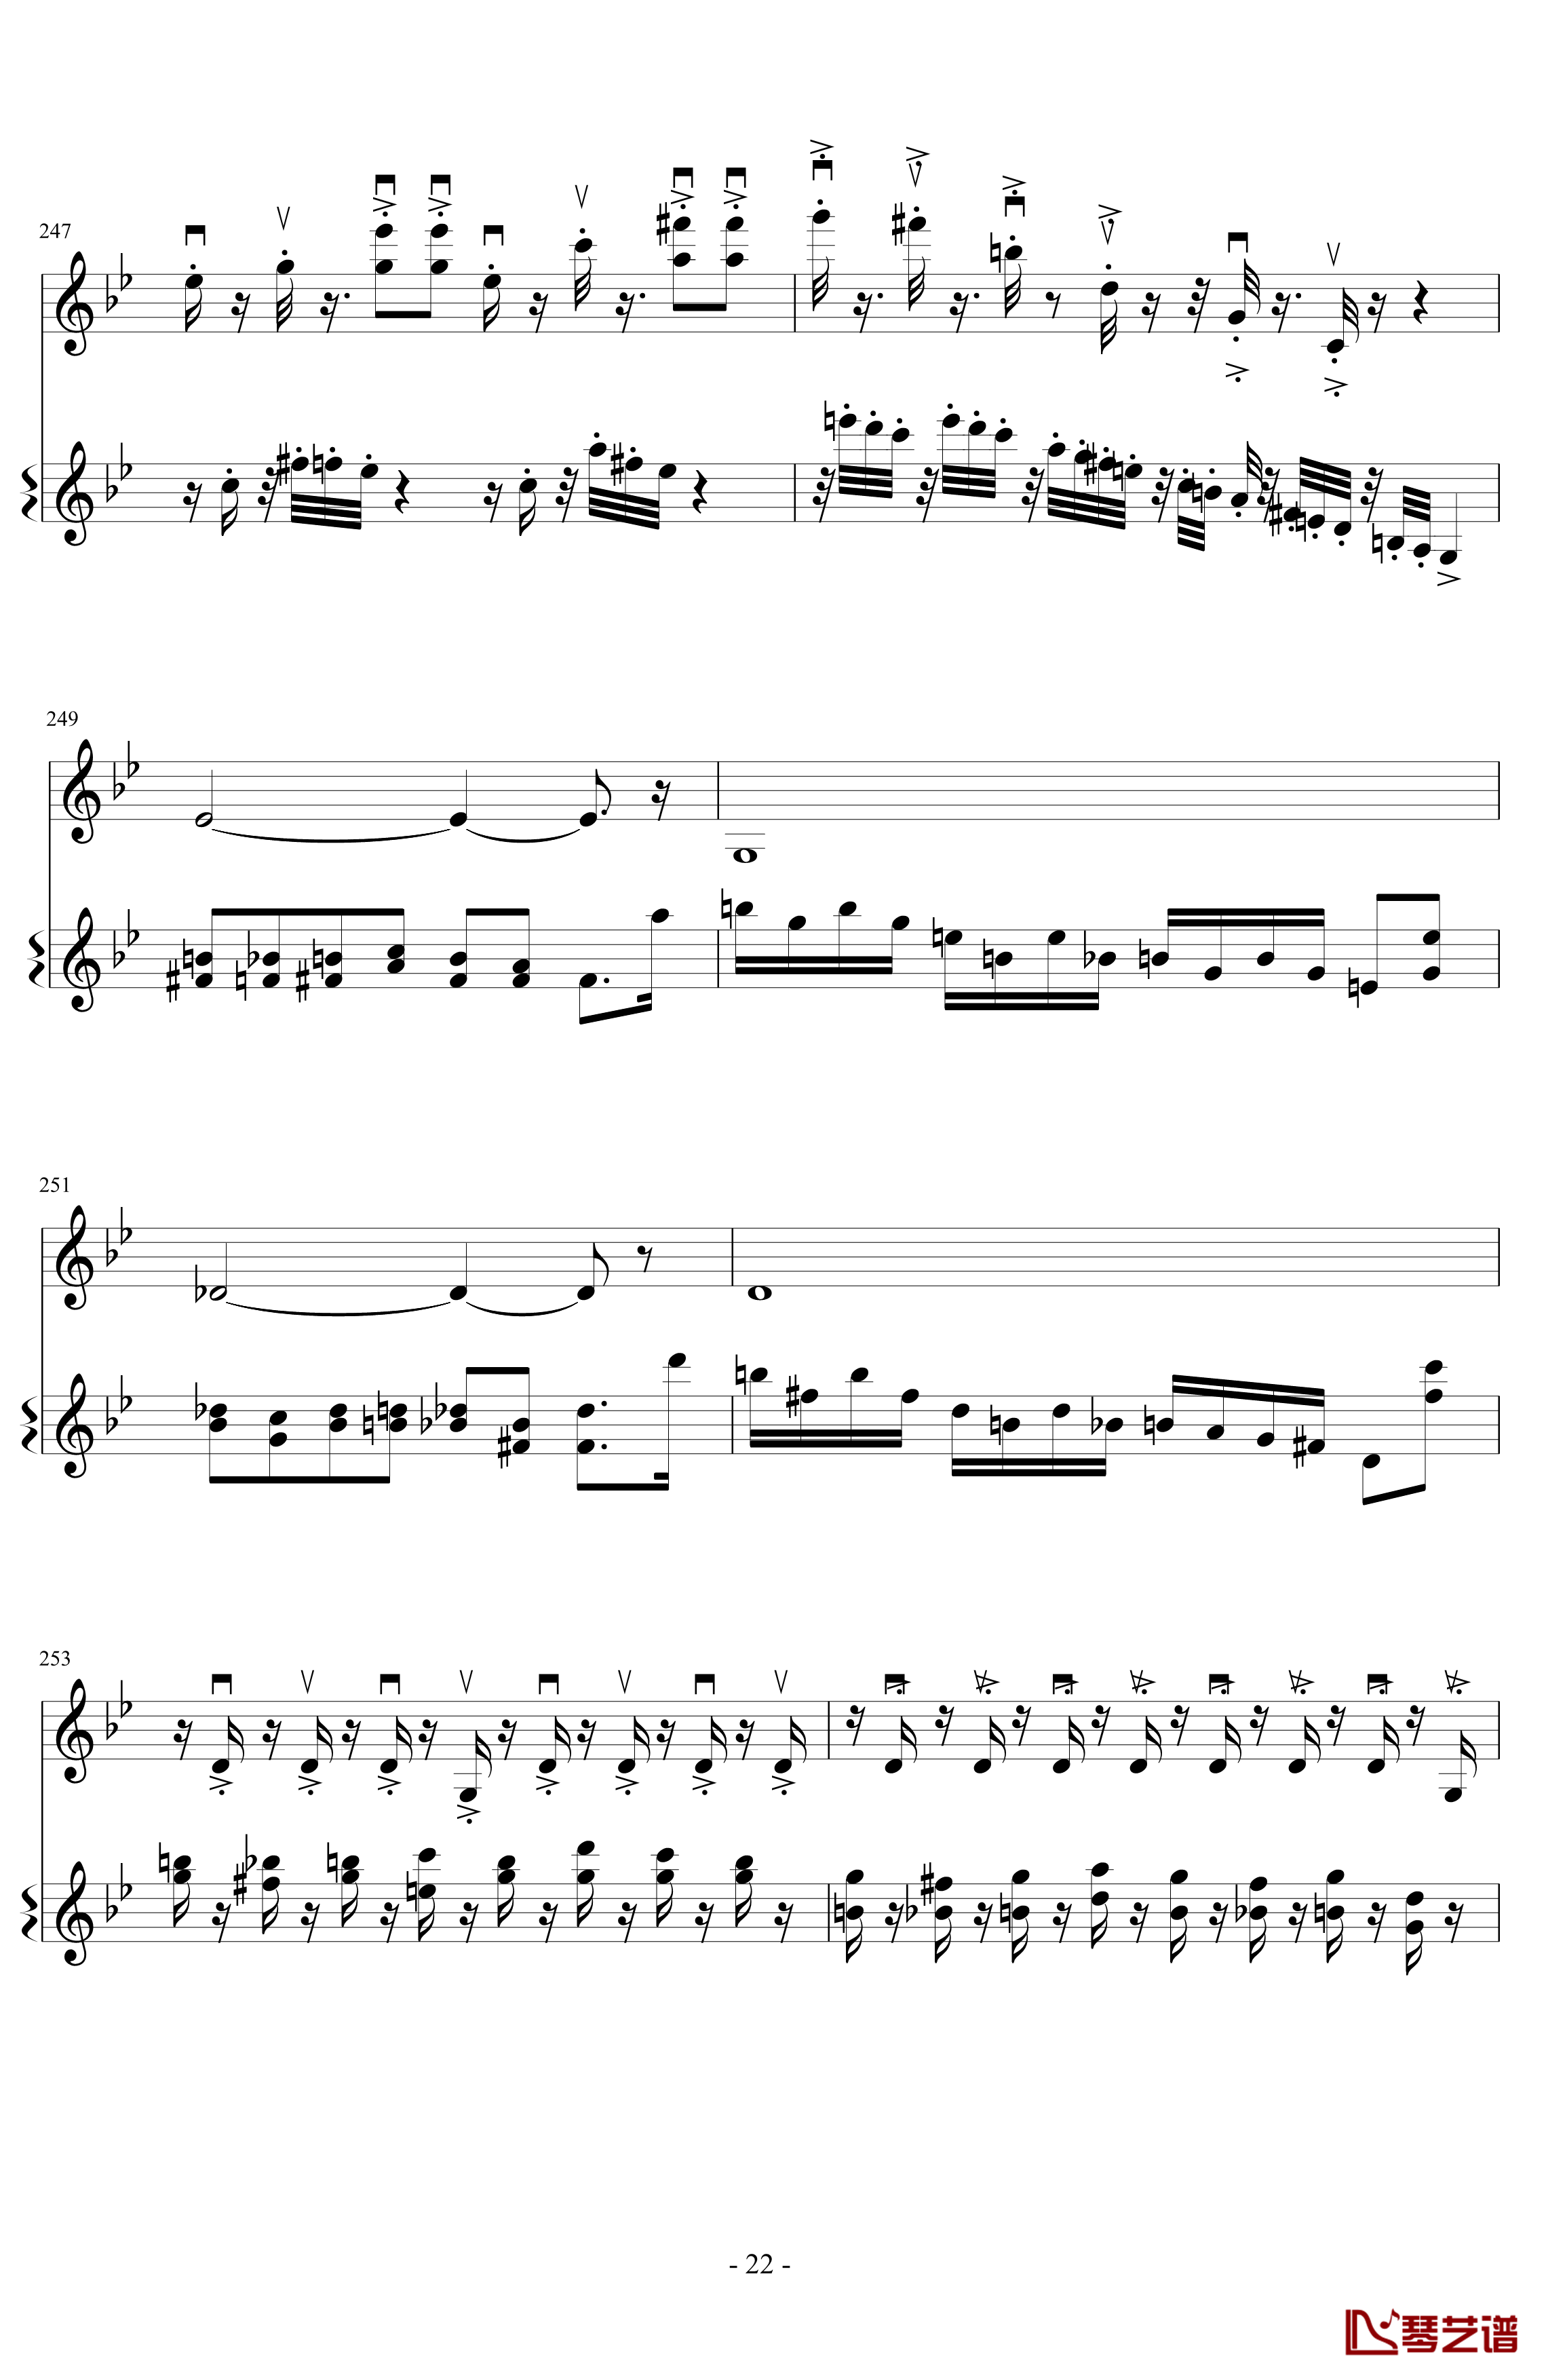 意大利国歌变奏曲钢琴谱-DXF22